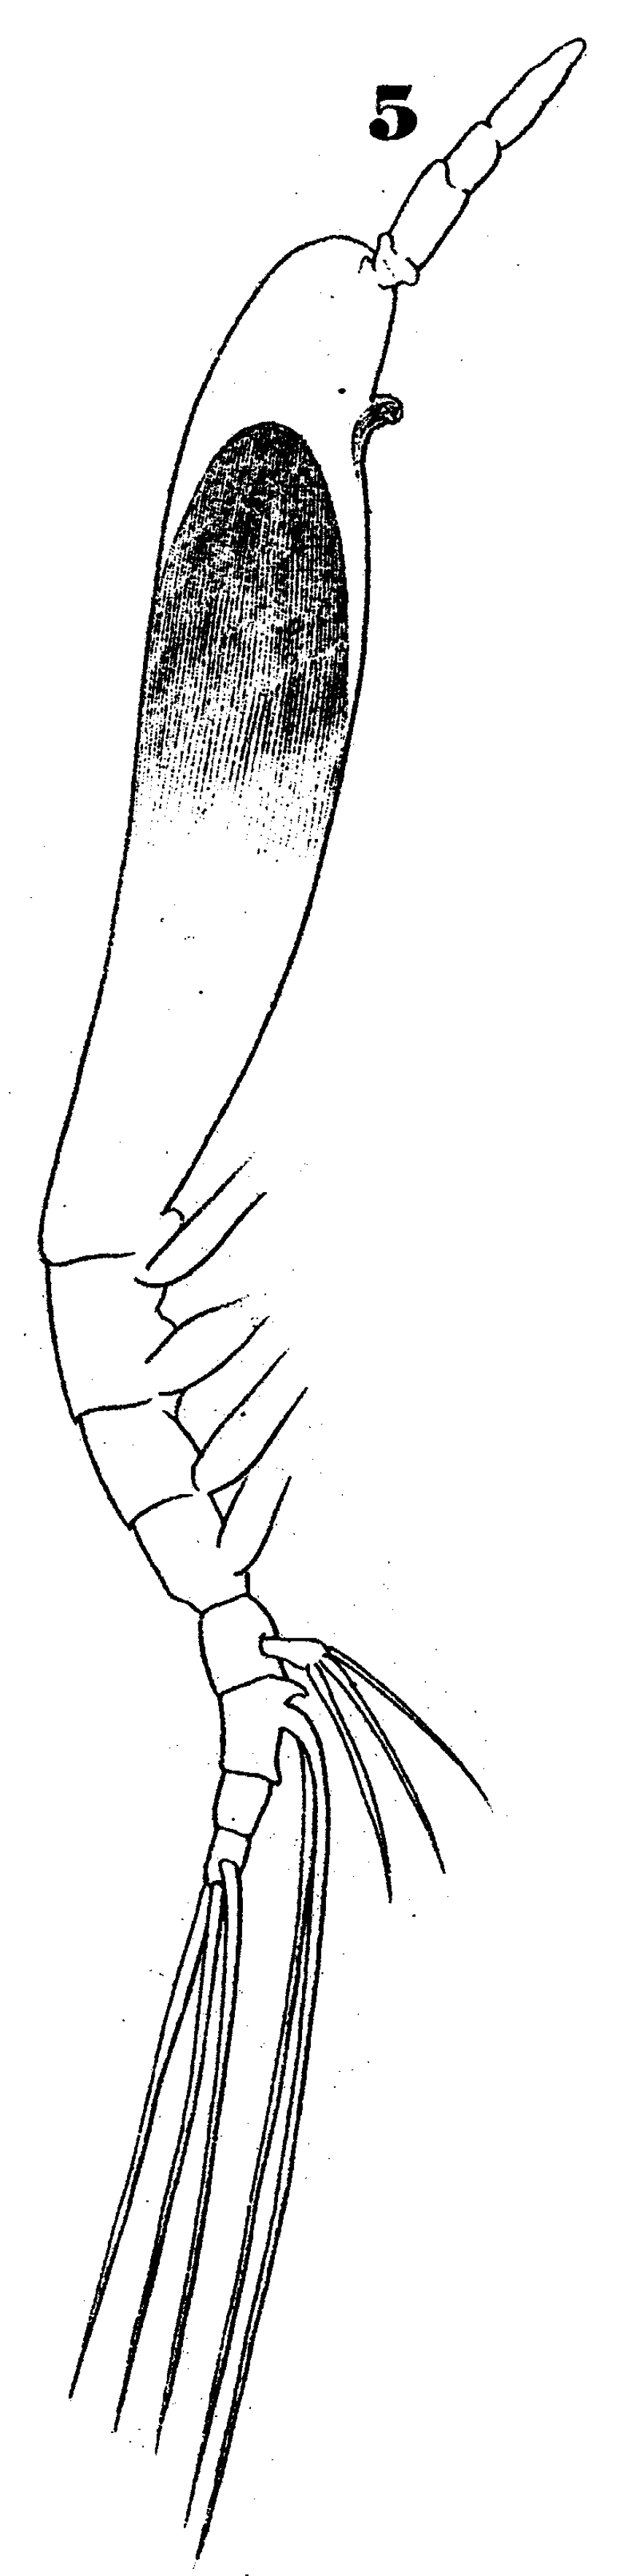 Espce Cymbasoma claparedei - Planche 1 de figures morphologiques